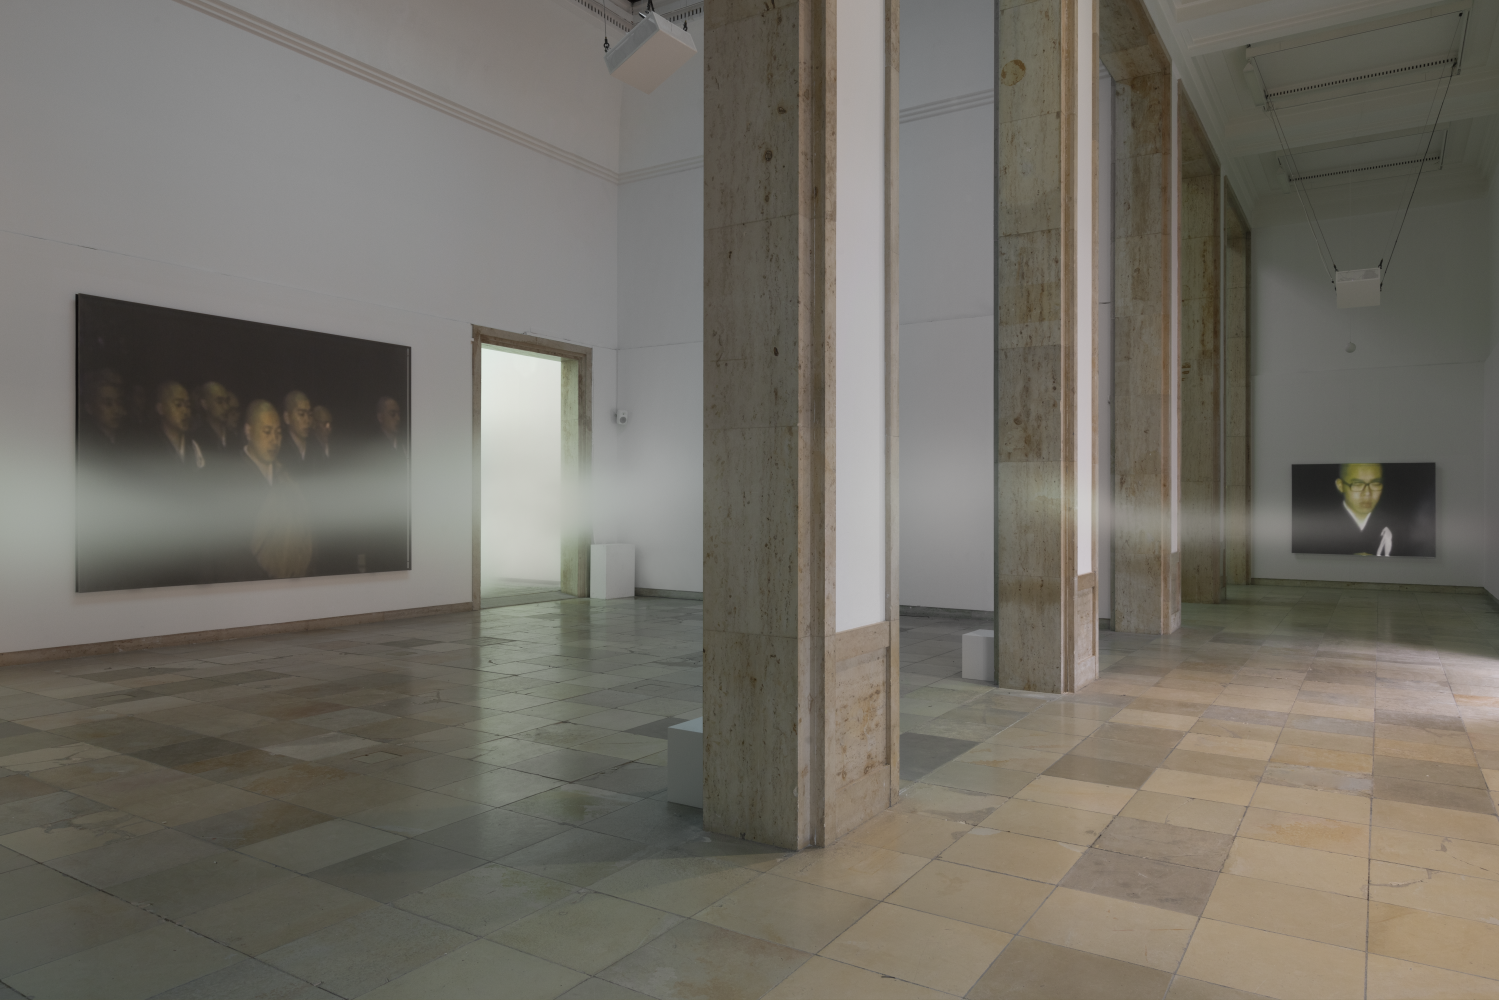 "Fujiko Nakaya: Nebel Leben", Installationsansicht Haus der Kunst, München, 2022